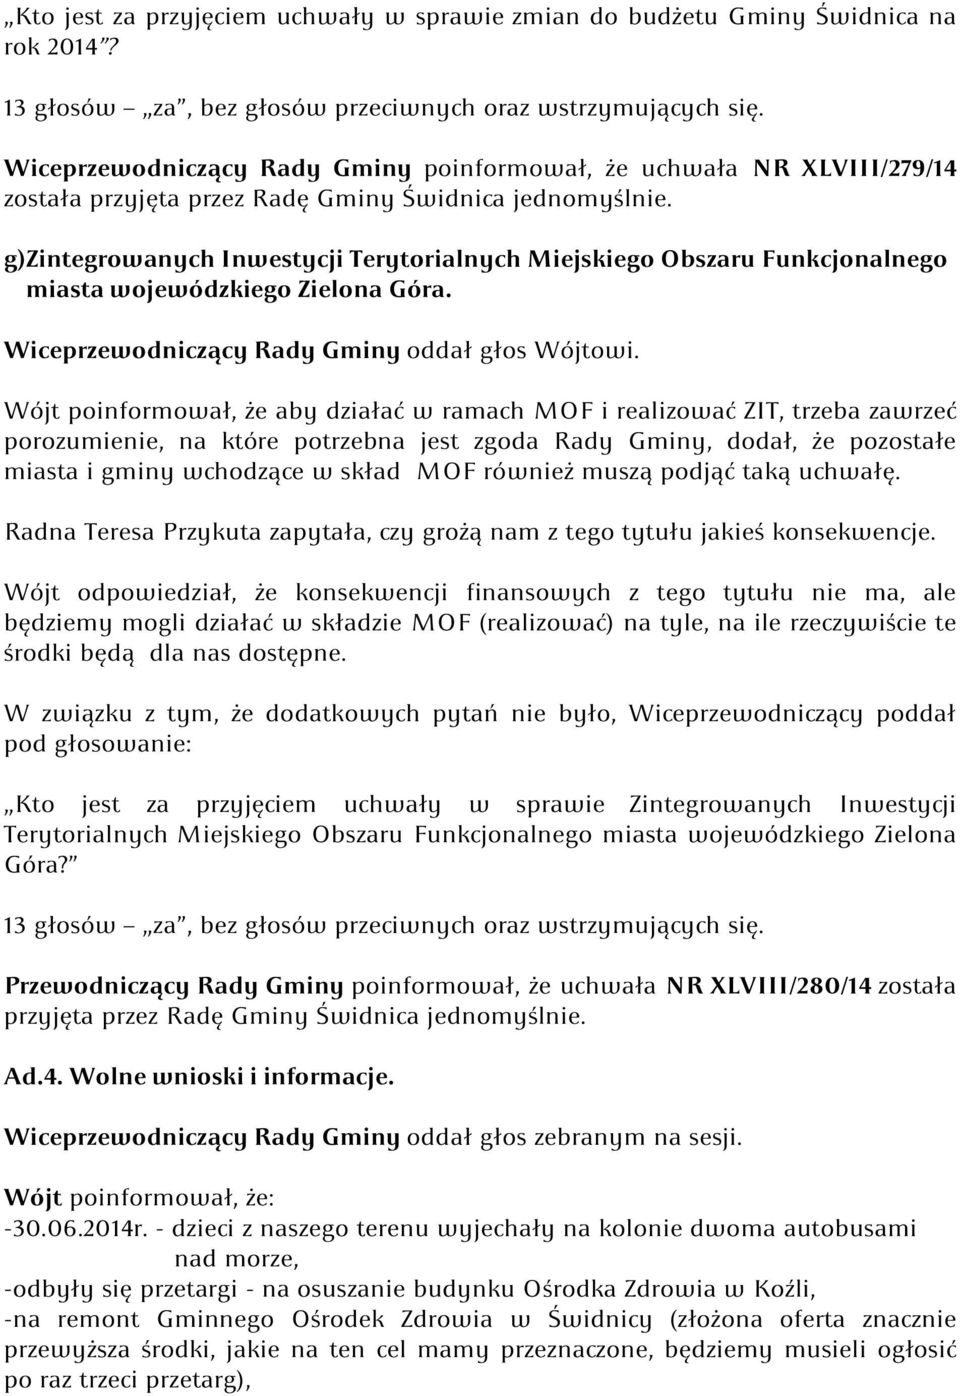 g)zintegrowanych Inwestycji Terytorialnych Miejskiego Obszaru Funkcjonalnego miasta wojewódzkiego Zielona Góra.